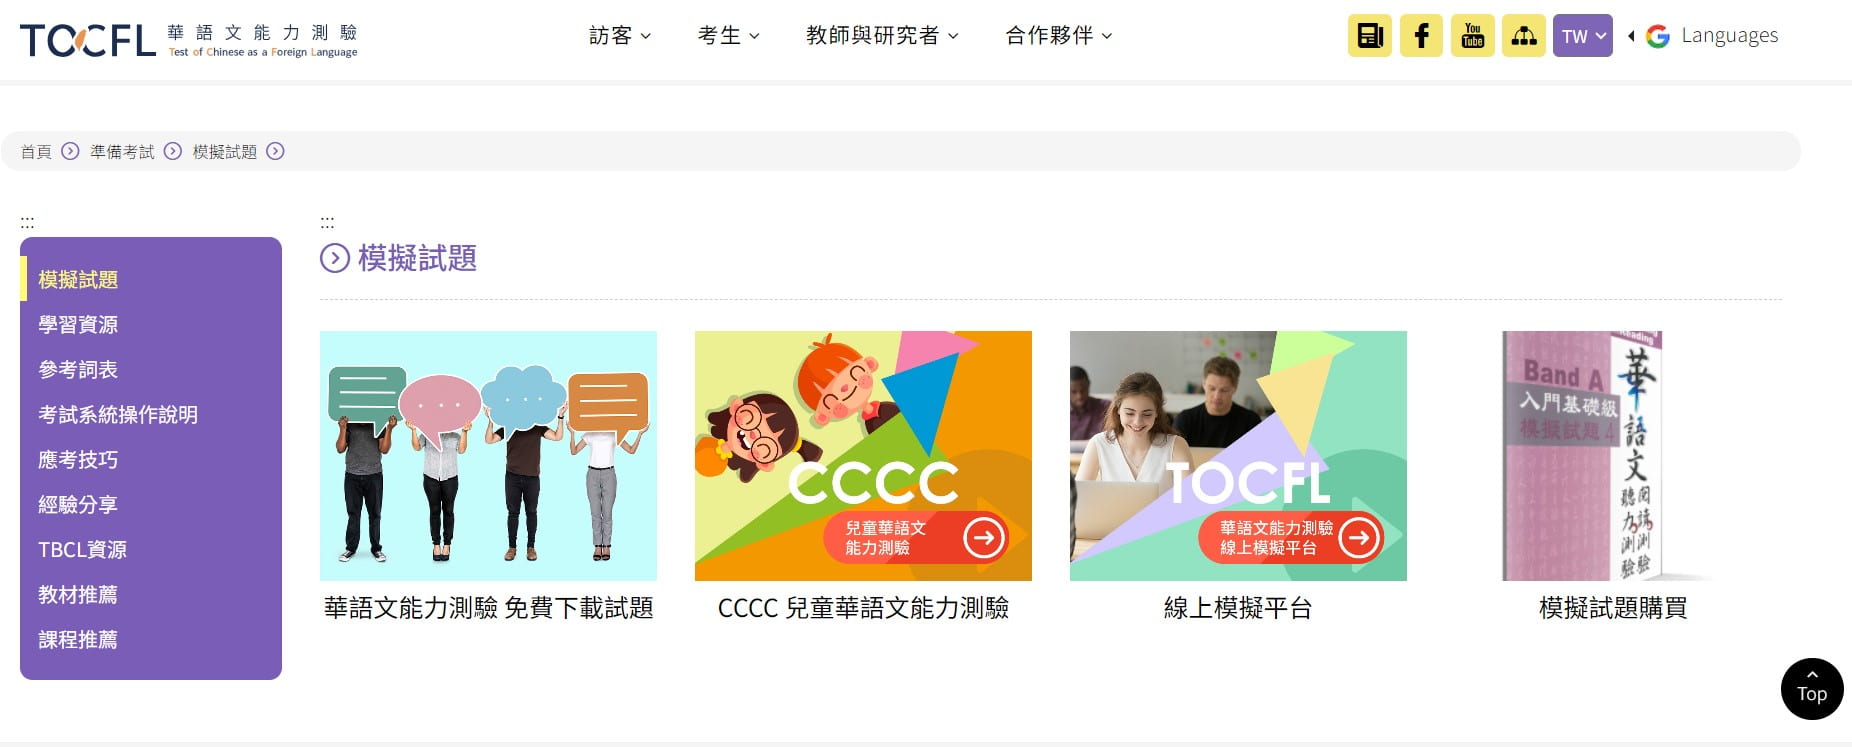 TOCFL là tiêu chuẩn tham khảo cho trình độ tiếng Hoa tại các trường ở Đài Loan